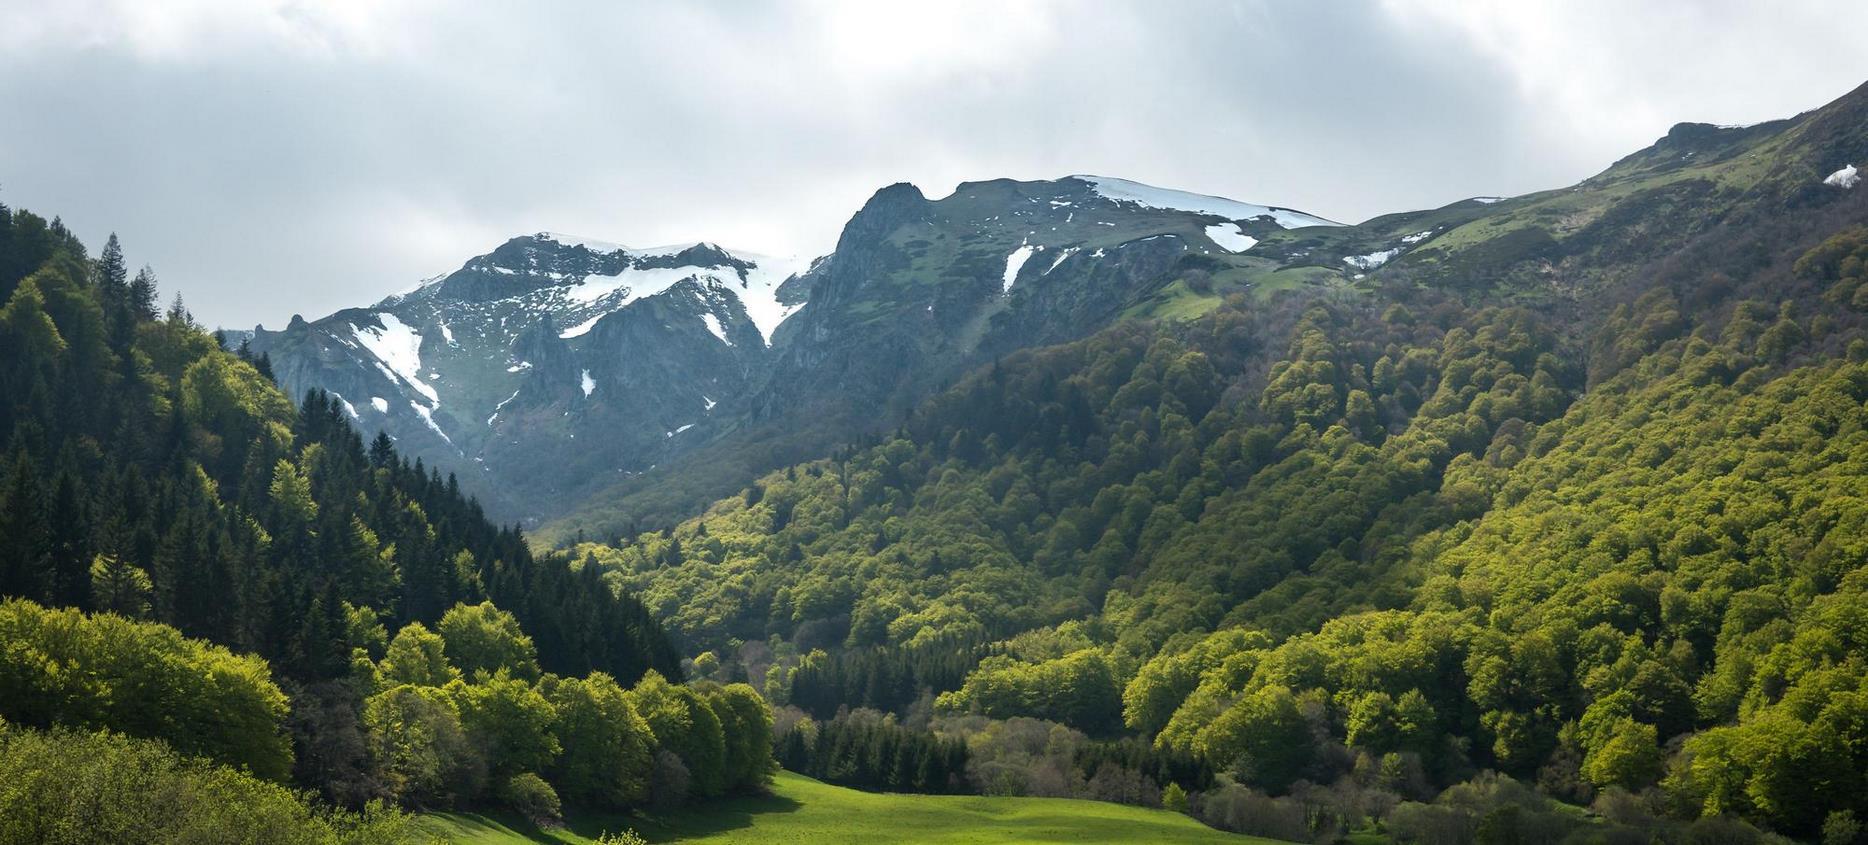 Super Besse, paysage verdoyant dans la Vallée de Chaudefour